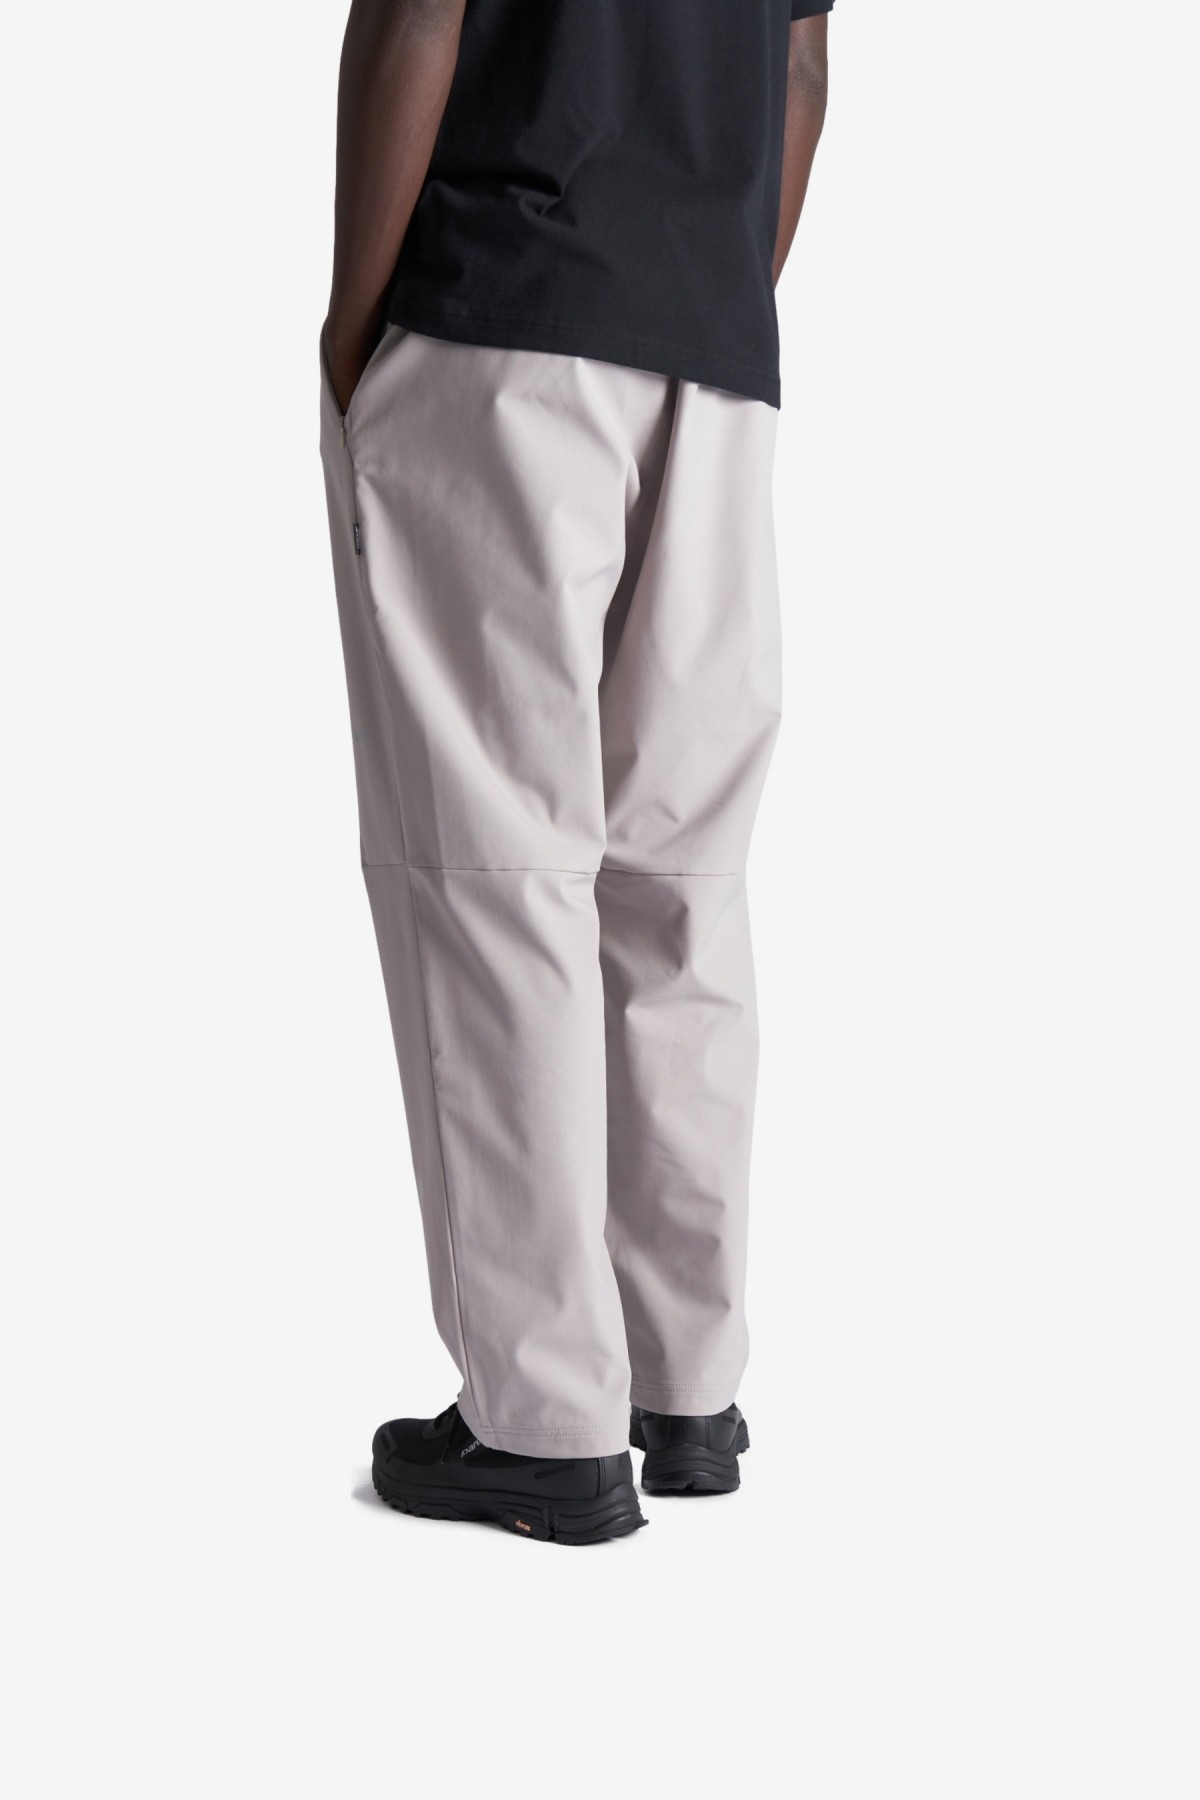 Parel Legan Pants in Light Grey